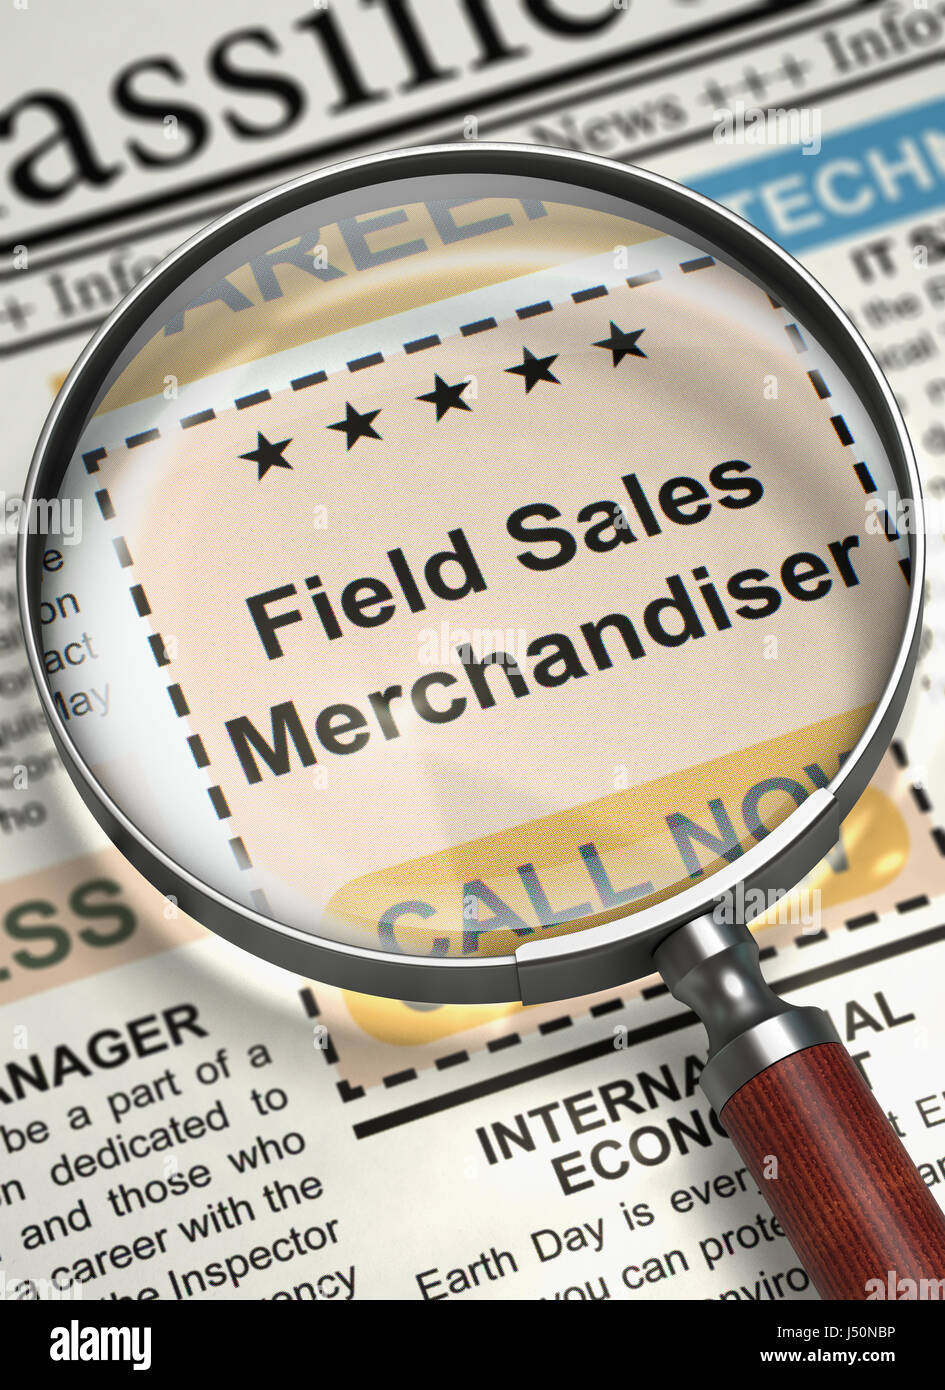 Field Sales Merchandiser Hiring Now. 3D. Stock Photo